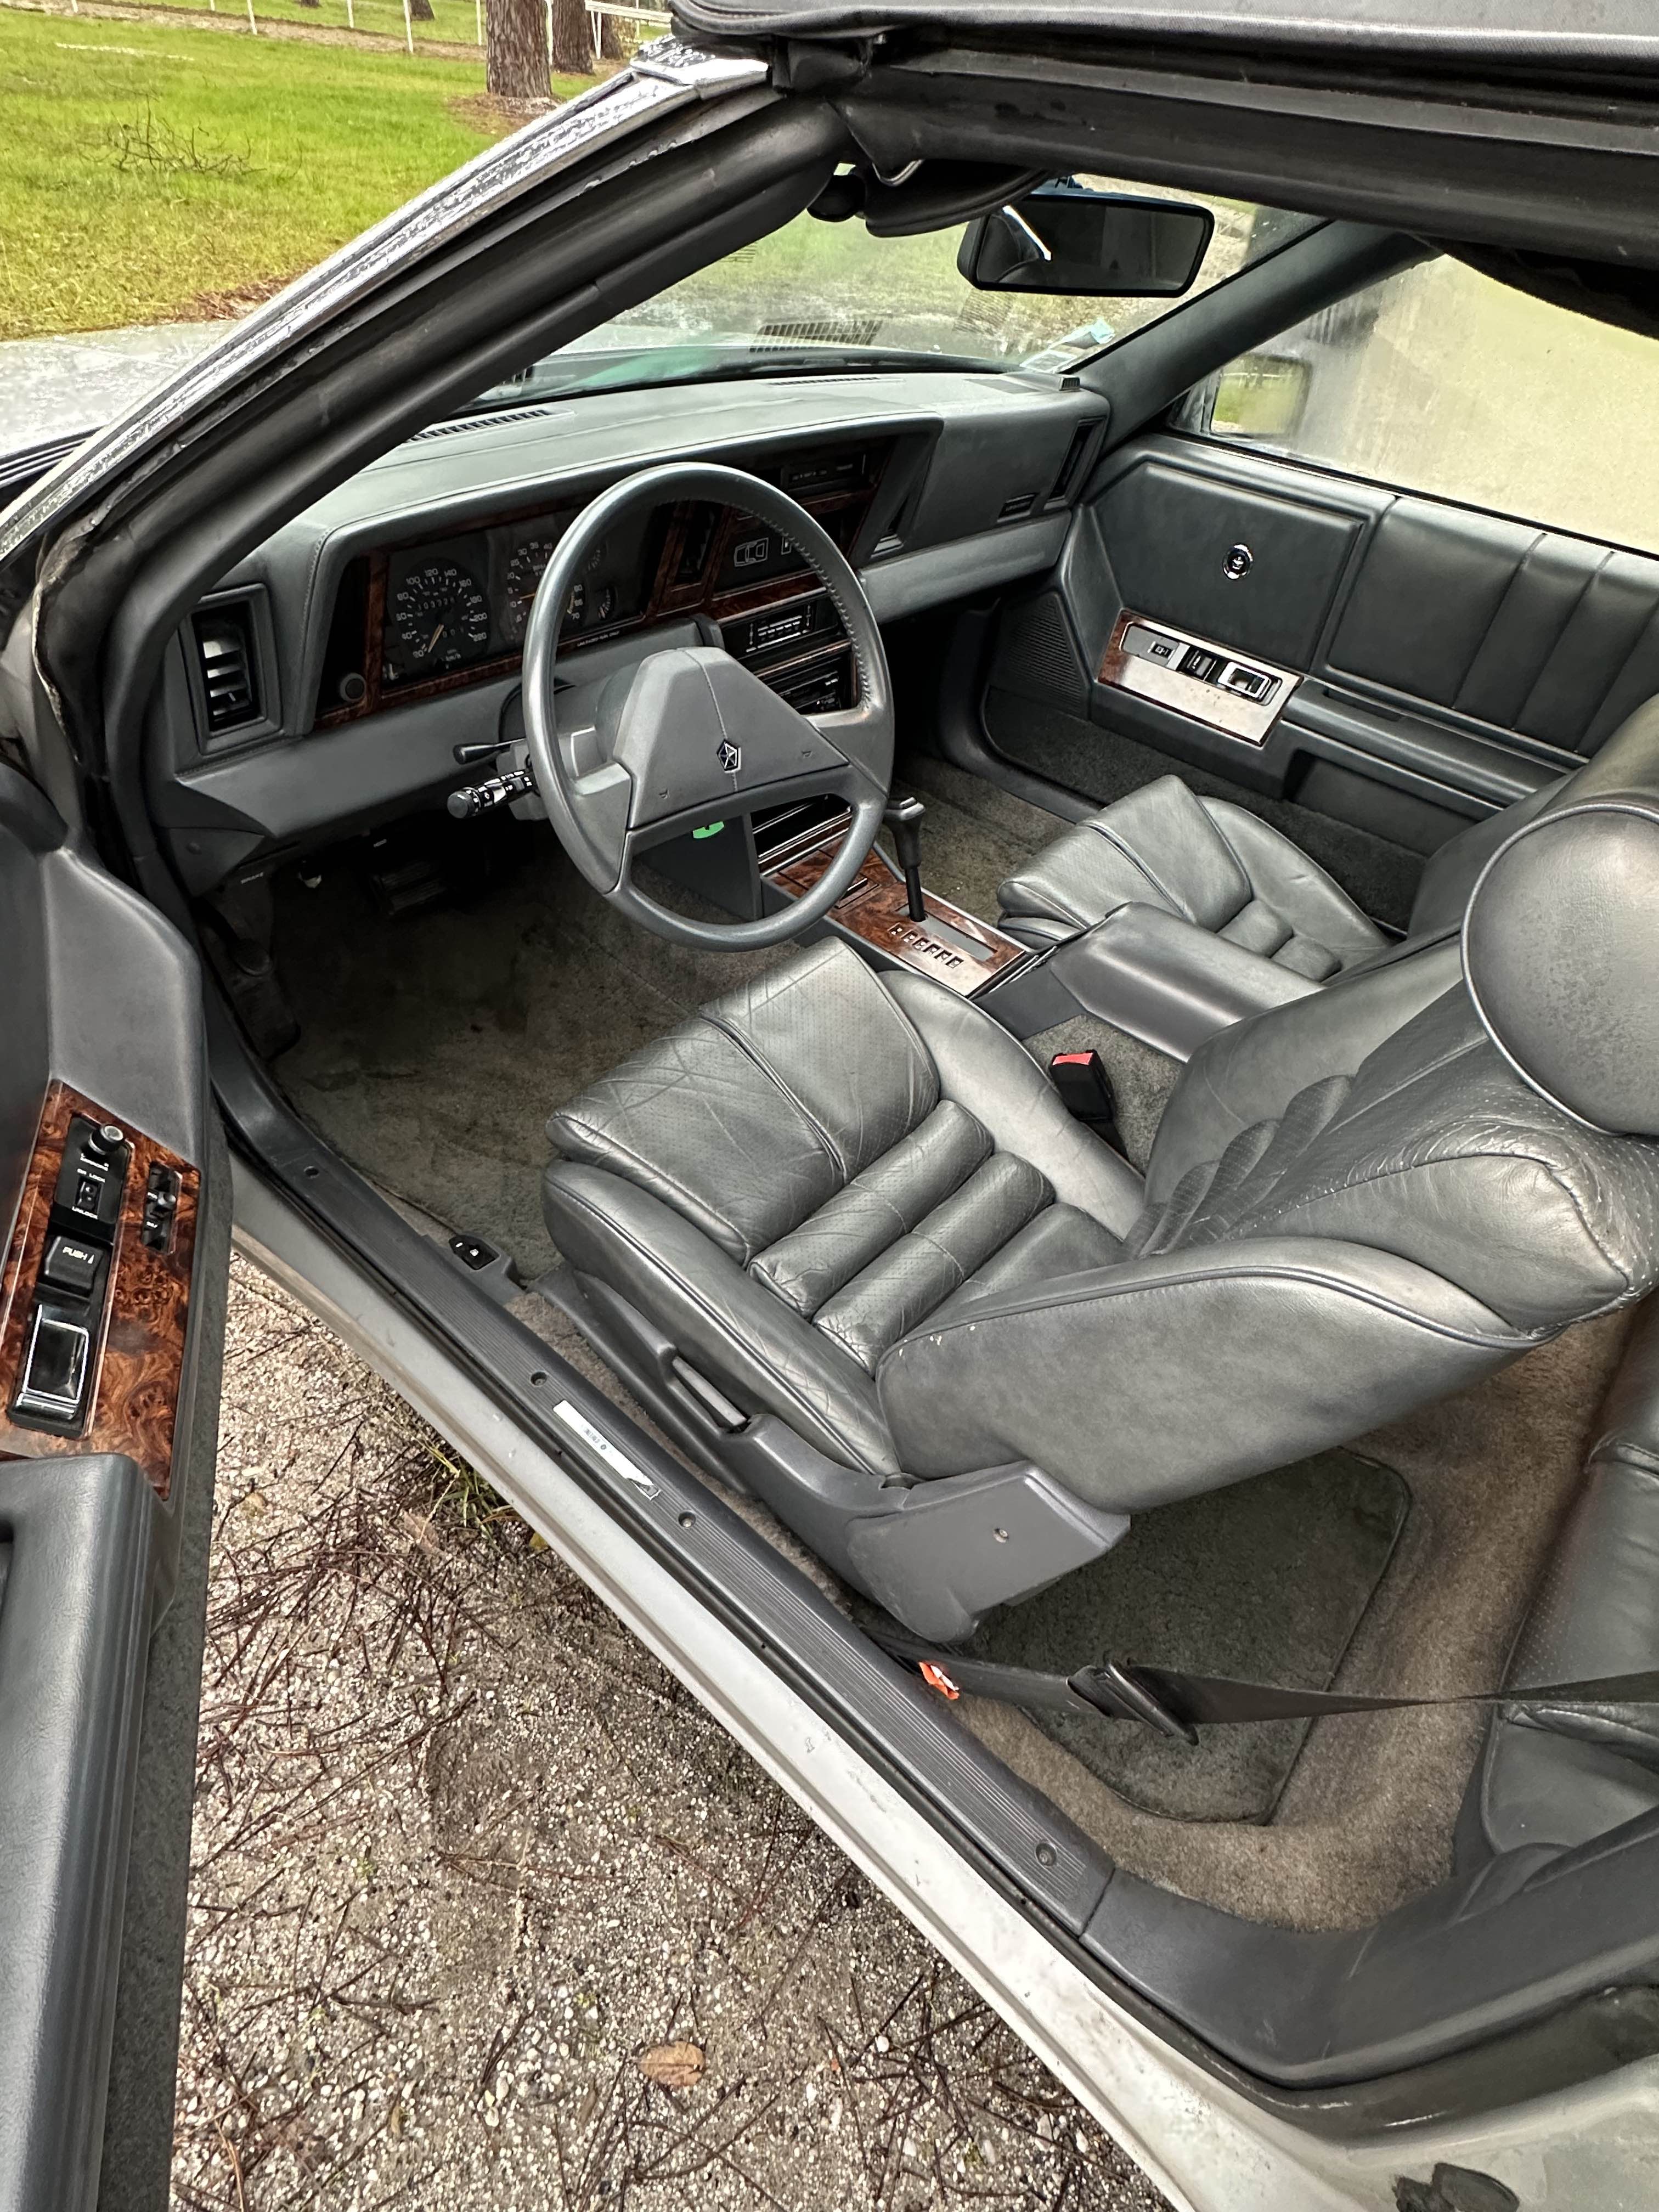 Chrysler Le Baron cabriolet de 1989 en 2L5 Turbo 152 CV boite auto CT OK 56000KMS 6500 euros